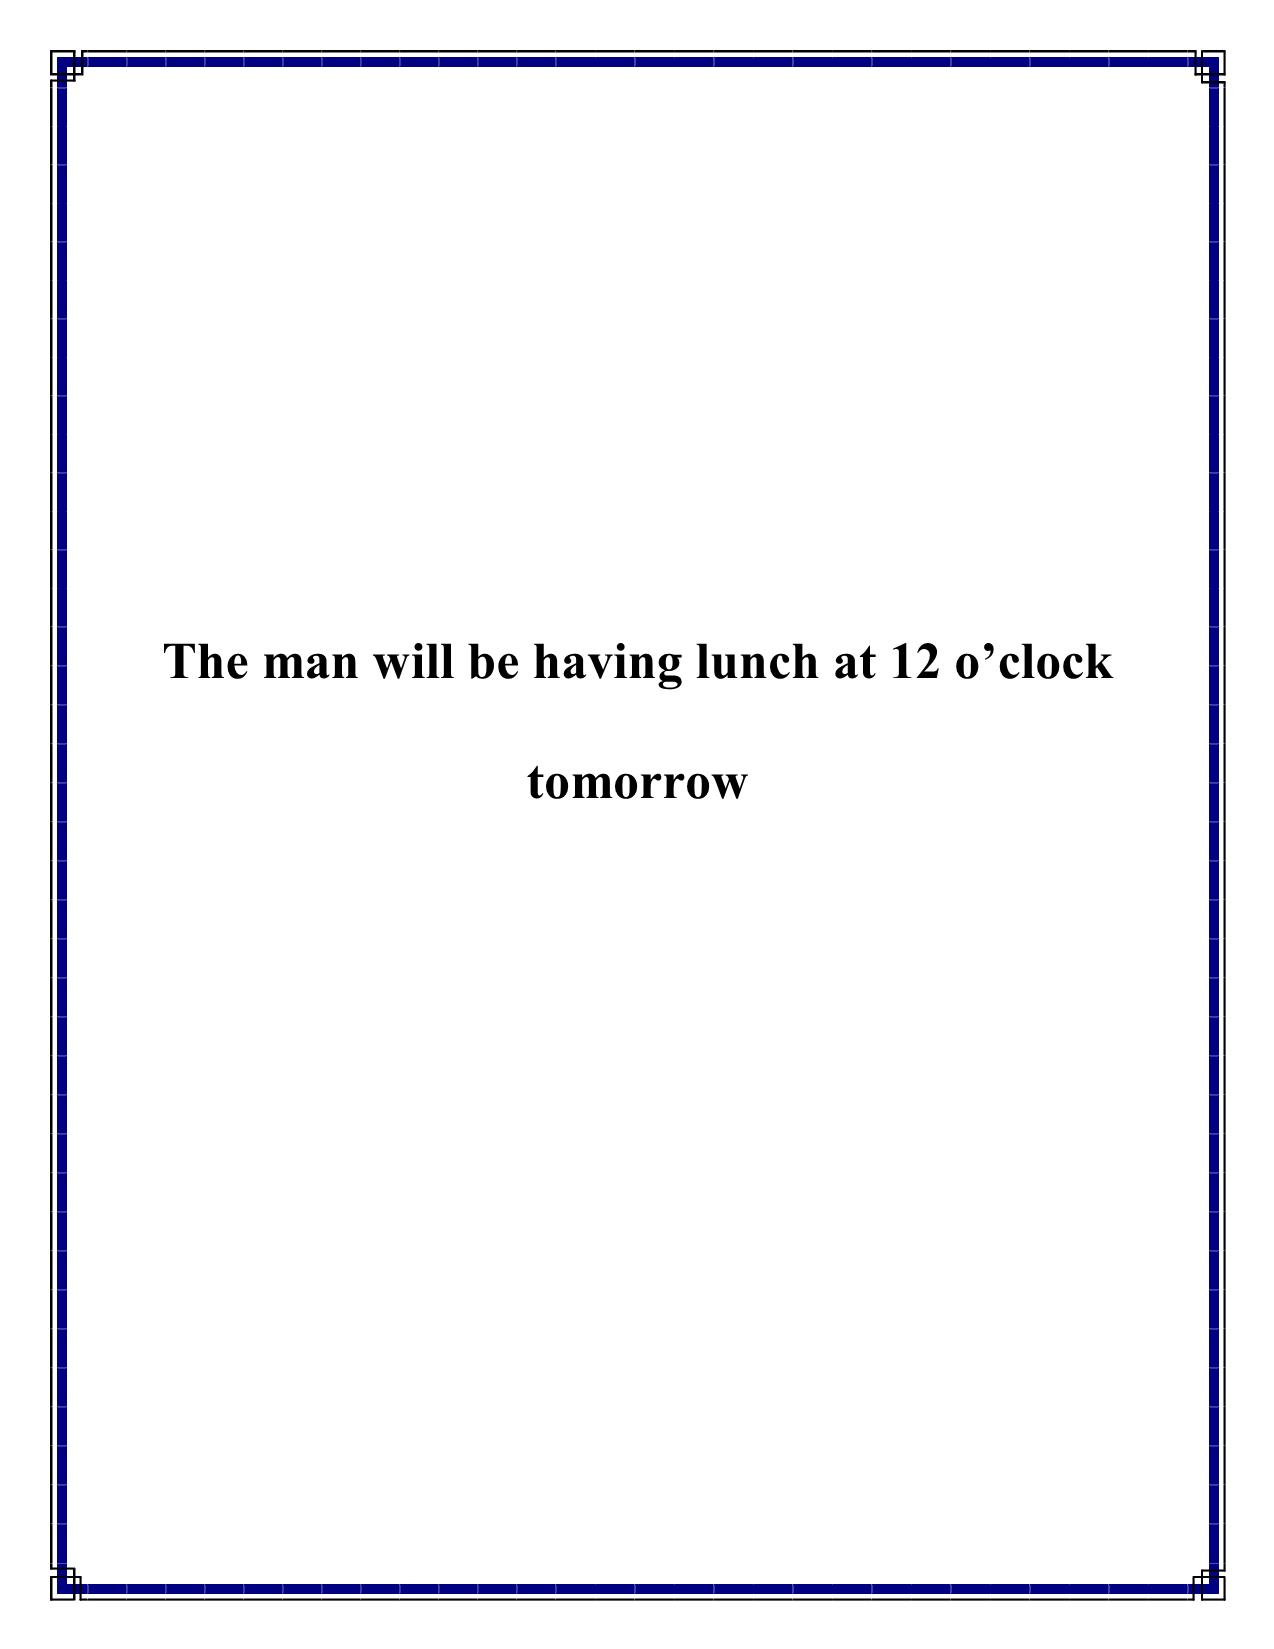 The man will be having lunch at 12 o’clock tomorrow trang 1